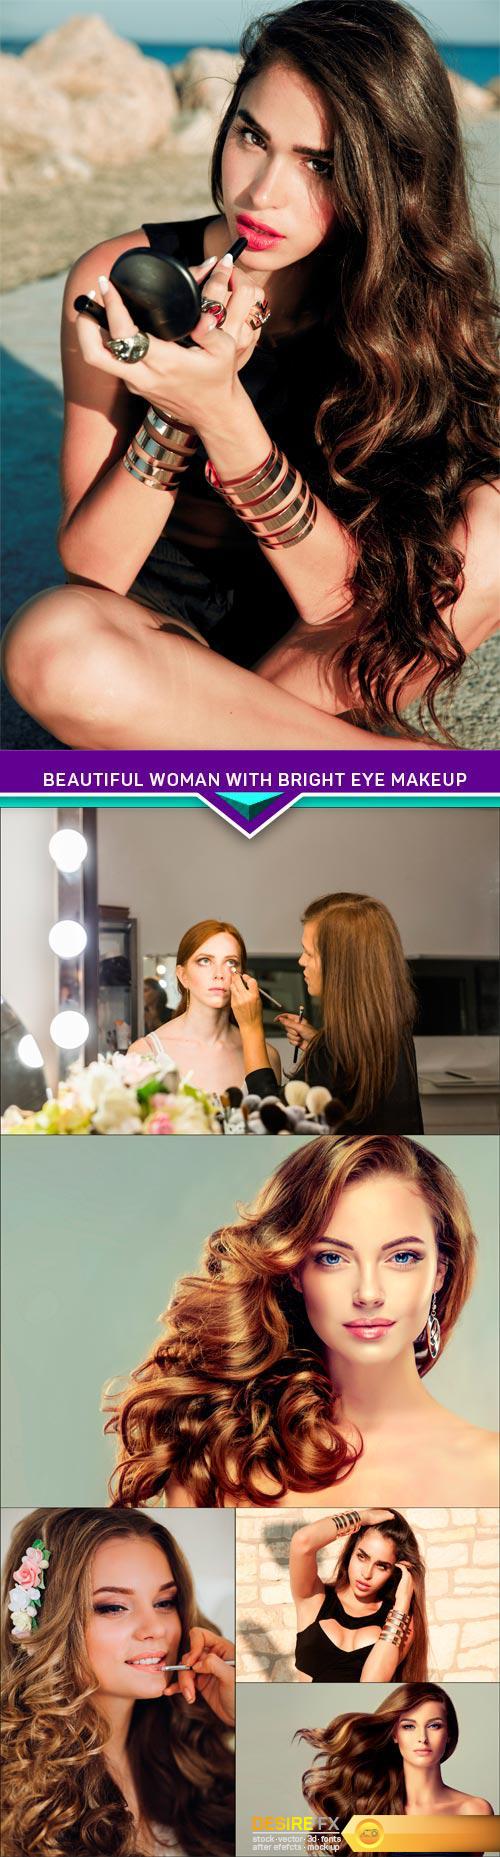 Beautiful woman with bright eye makeup, sexy models 6X JPEG